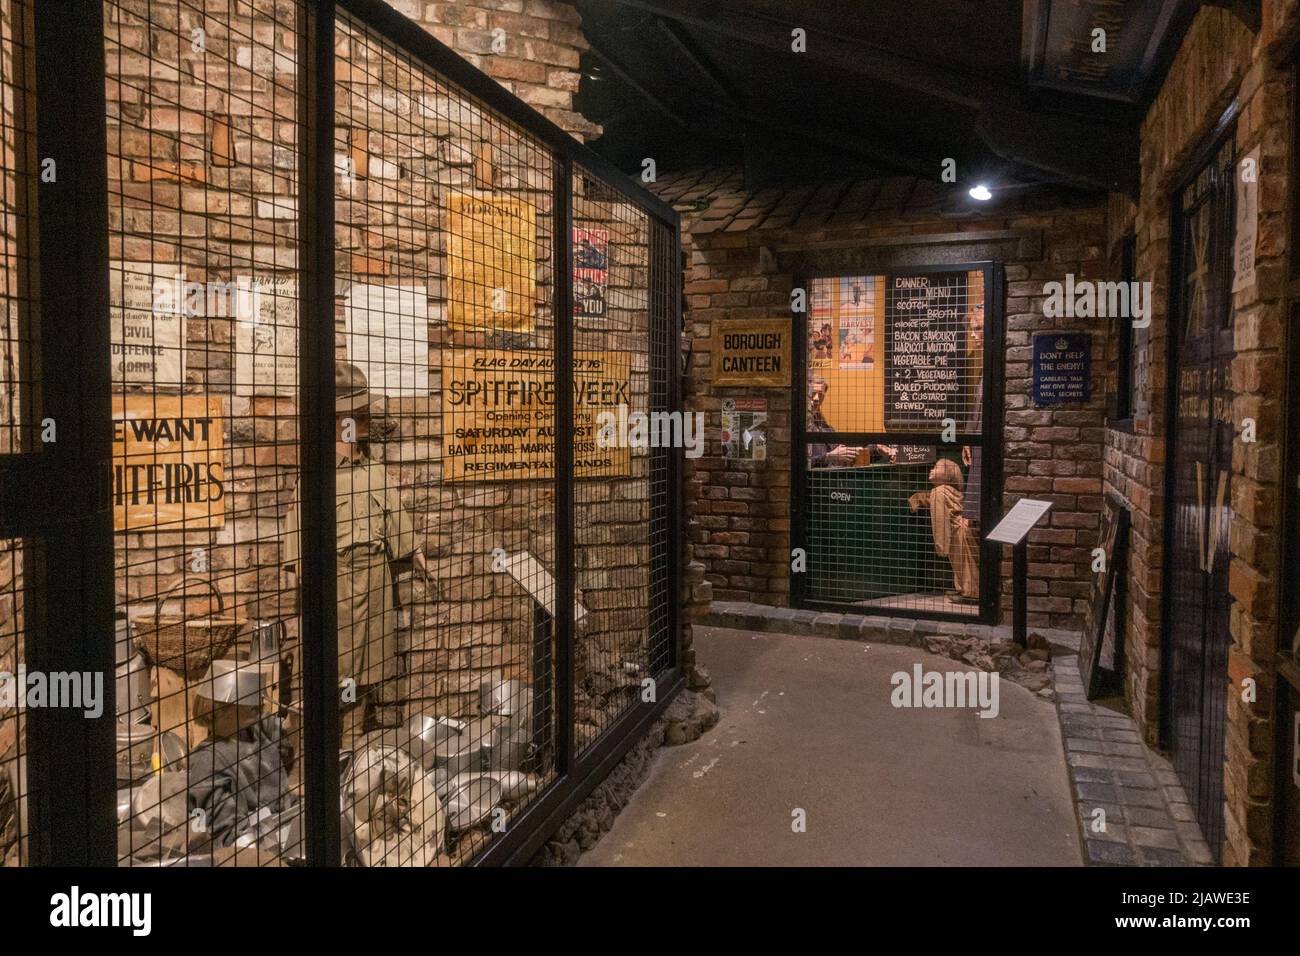 Vue générale à l'intérieur d'une hutte montrant des expositions sur le thème de la Seconde Guerre mondiale dans le musée d'histoire moderne d'Eden Camp près de Malton, dans le North Yorkshire, en Angleterre. Banque D'Images